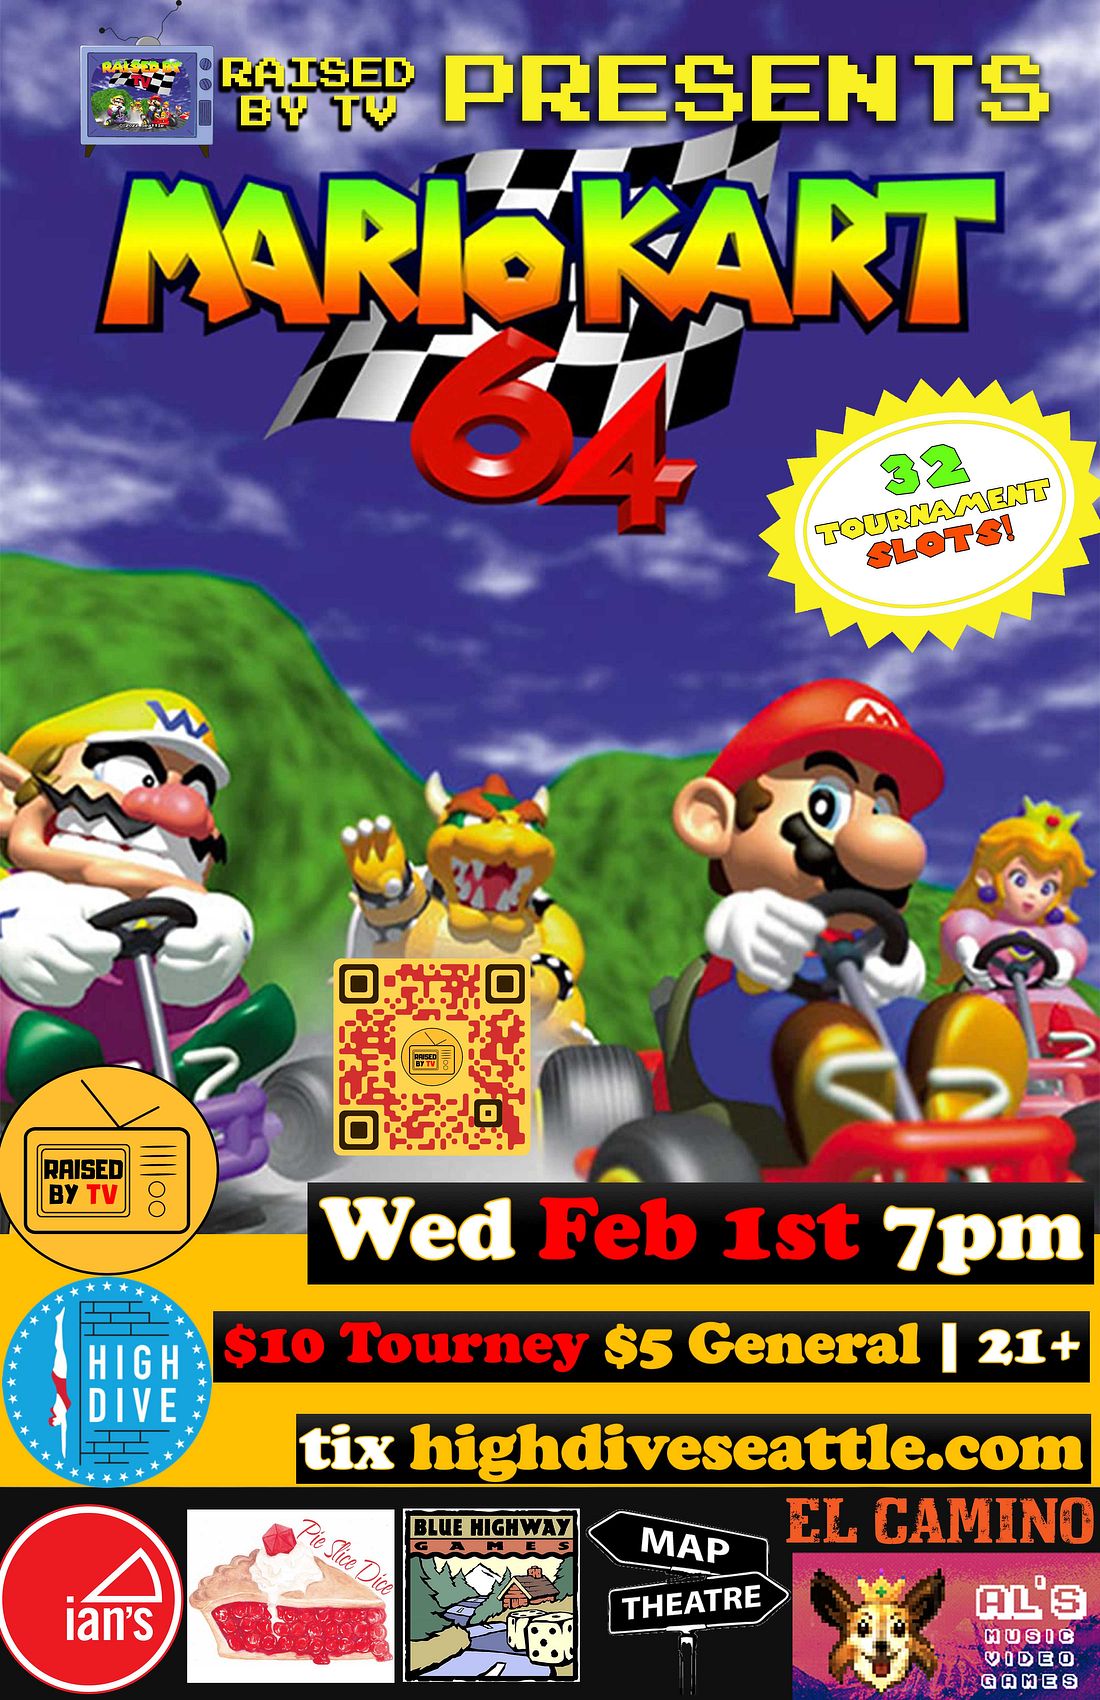 Mario Kart Tournament Flyer by chammy3760 on DeviantArt